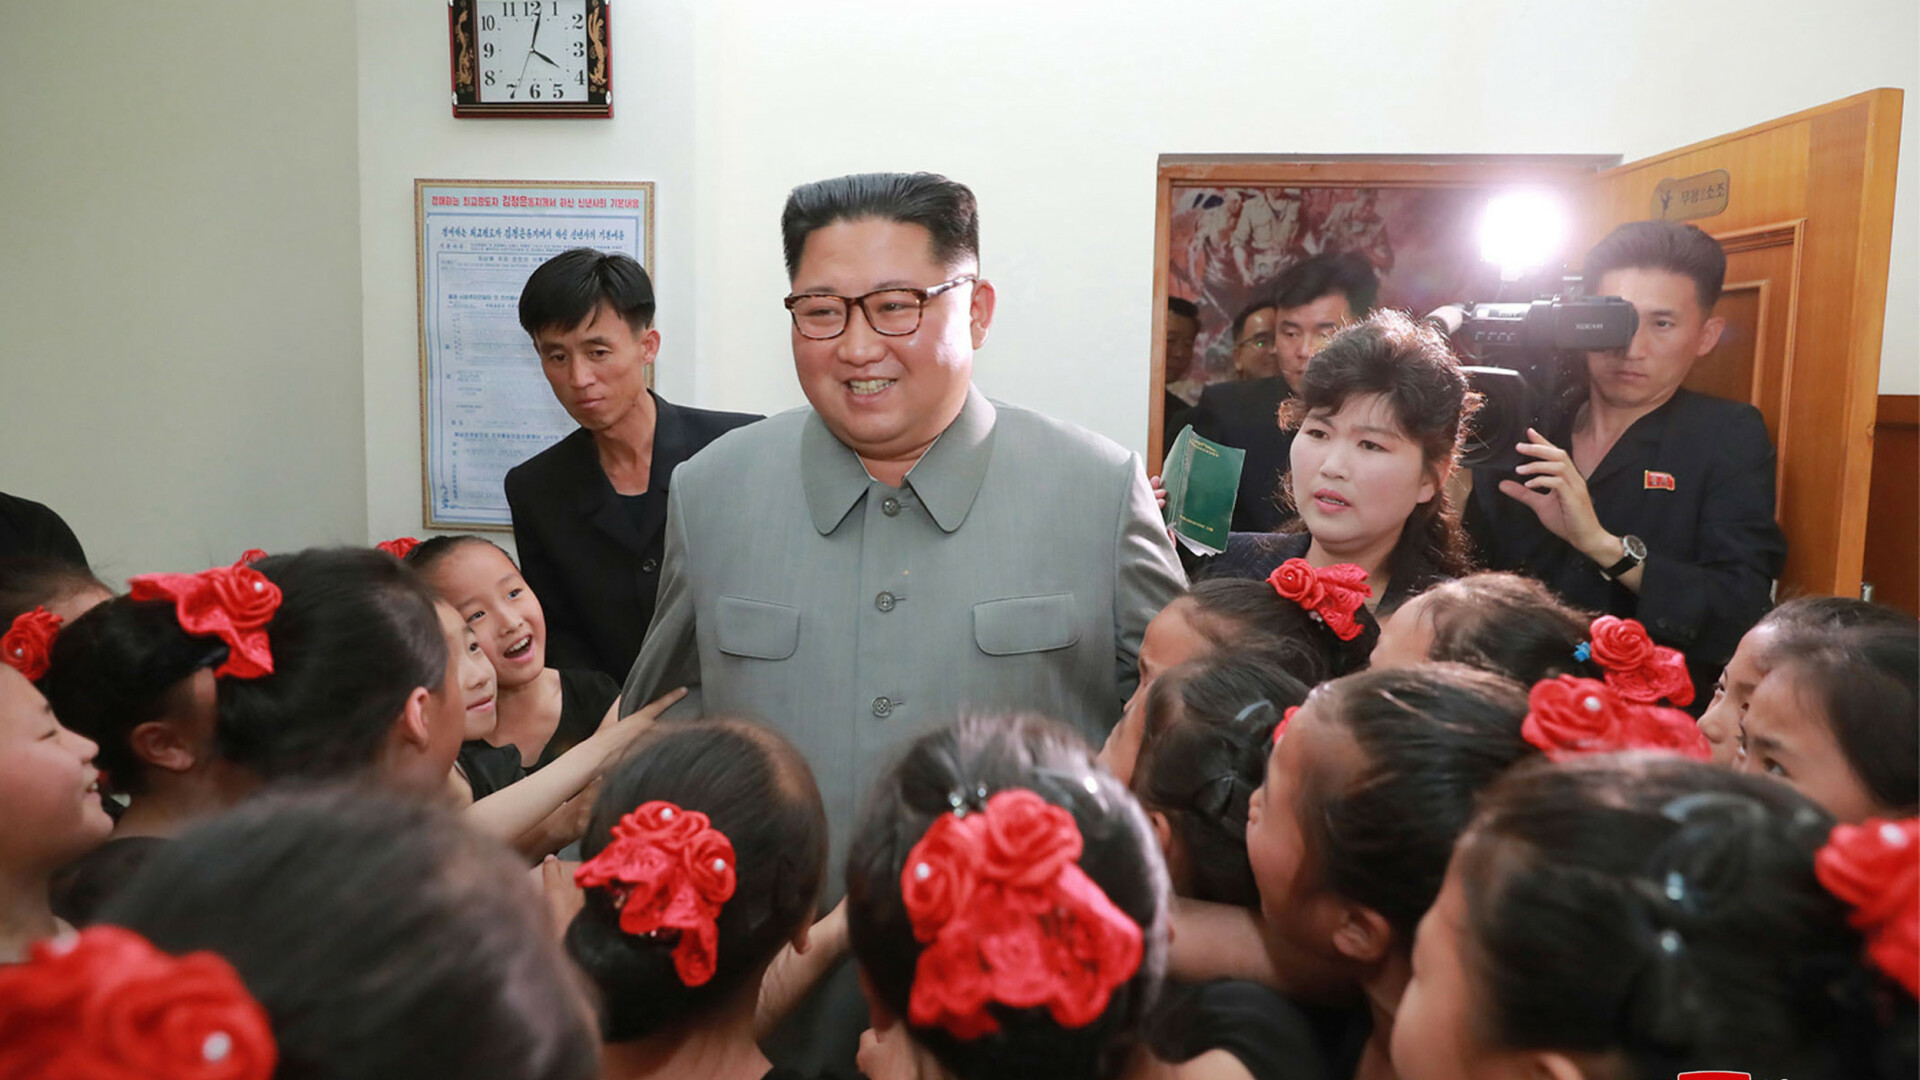 Kim Jong-un în vizită la o școală, la o zi după ce ar fi executat mai mulți oficiali